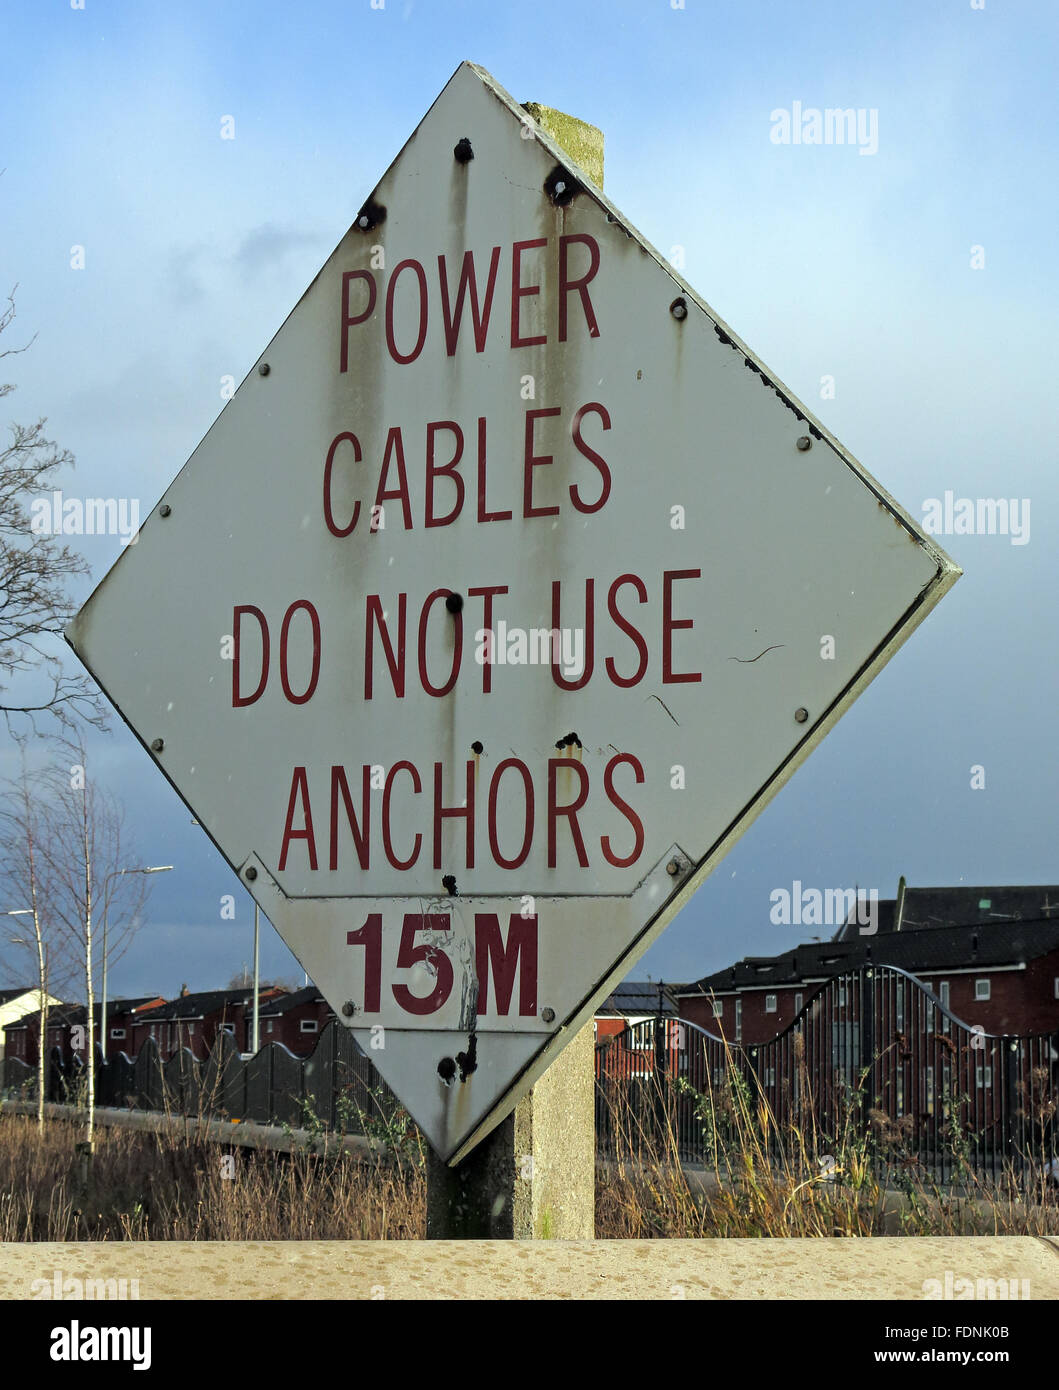 Les câbles d'alimentation n'utilisez pas d'ancres 15M signer,Rivière Mersey, Warrington, Cheshire, Angleterre, Royaume-Uni Banque D'Images